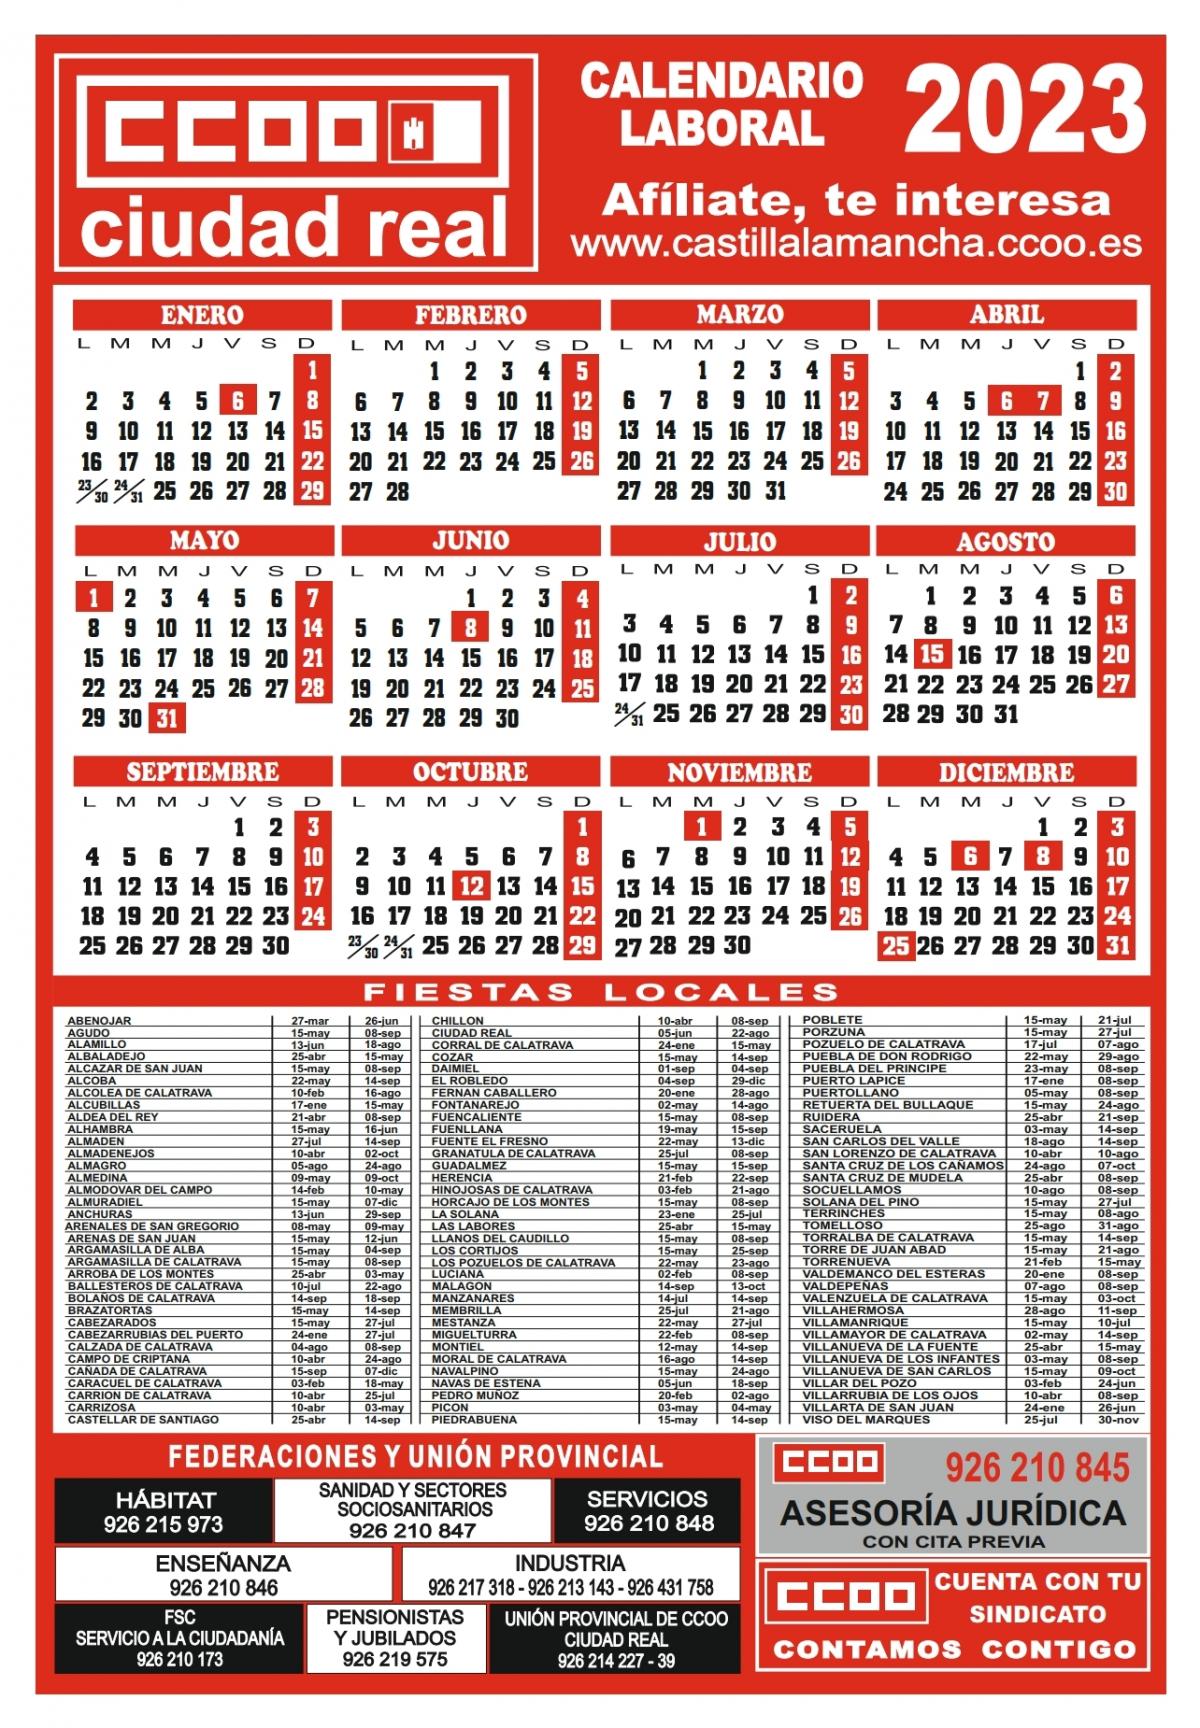 Calendario laboral 2023 Ciudad Real